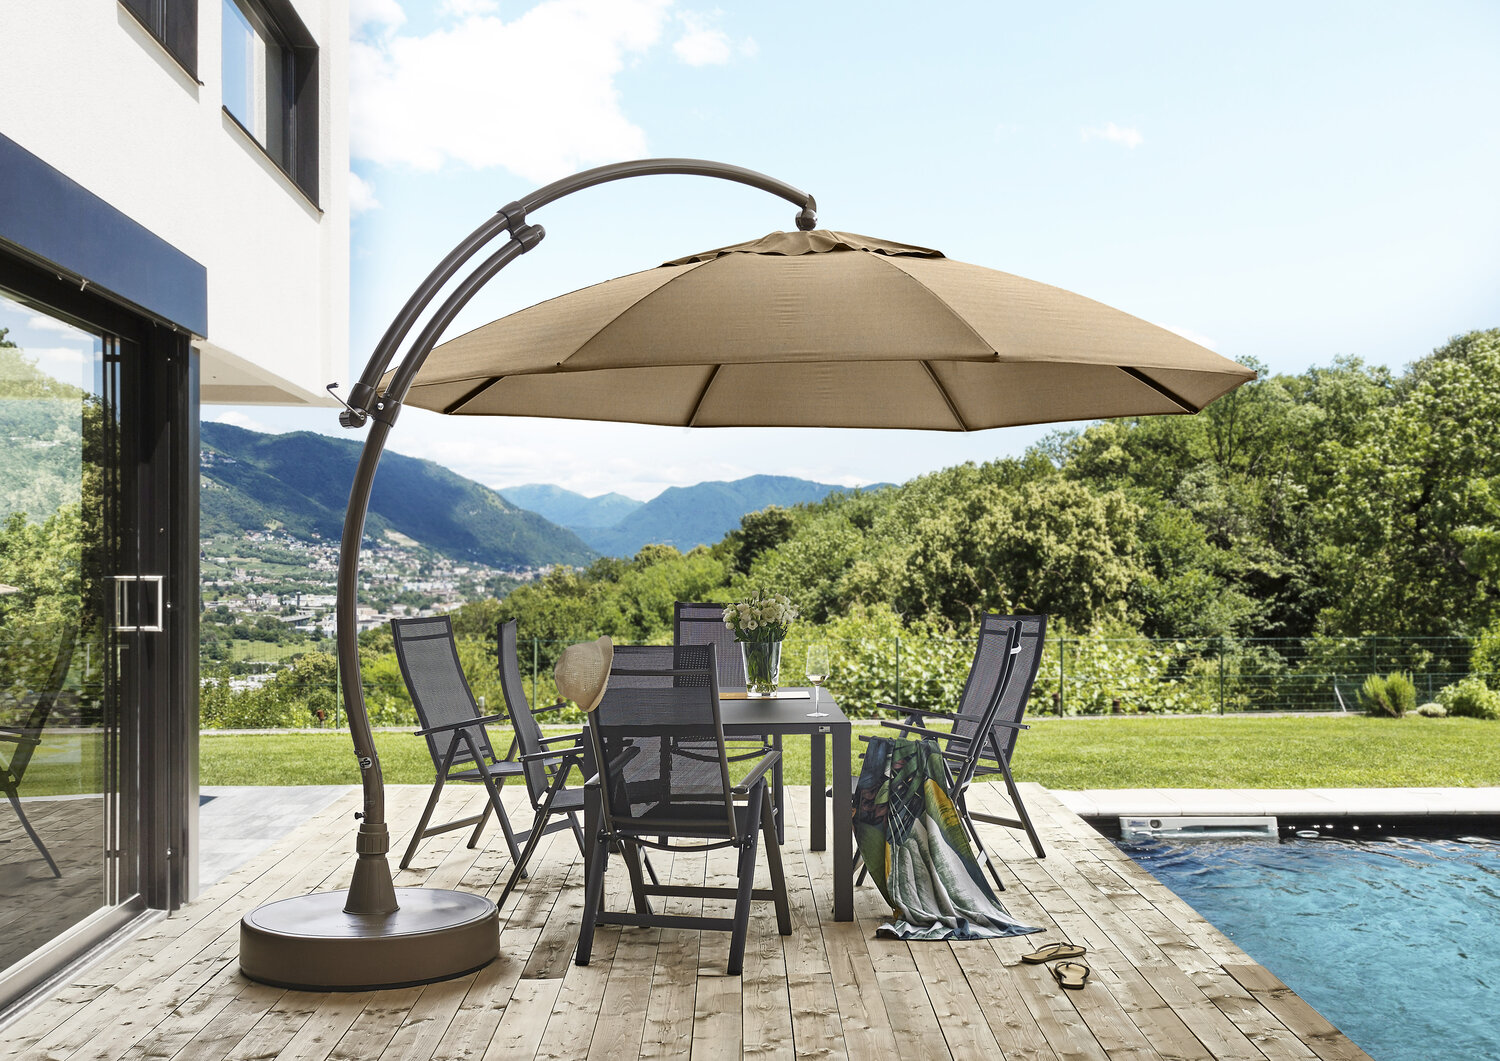 Cantilever Patio Umbrella With base — SUN GARDEN USA Cantilever Umbrella